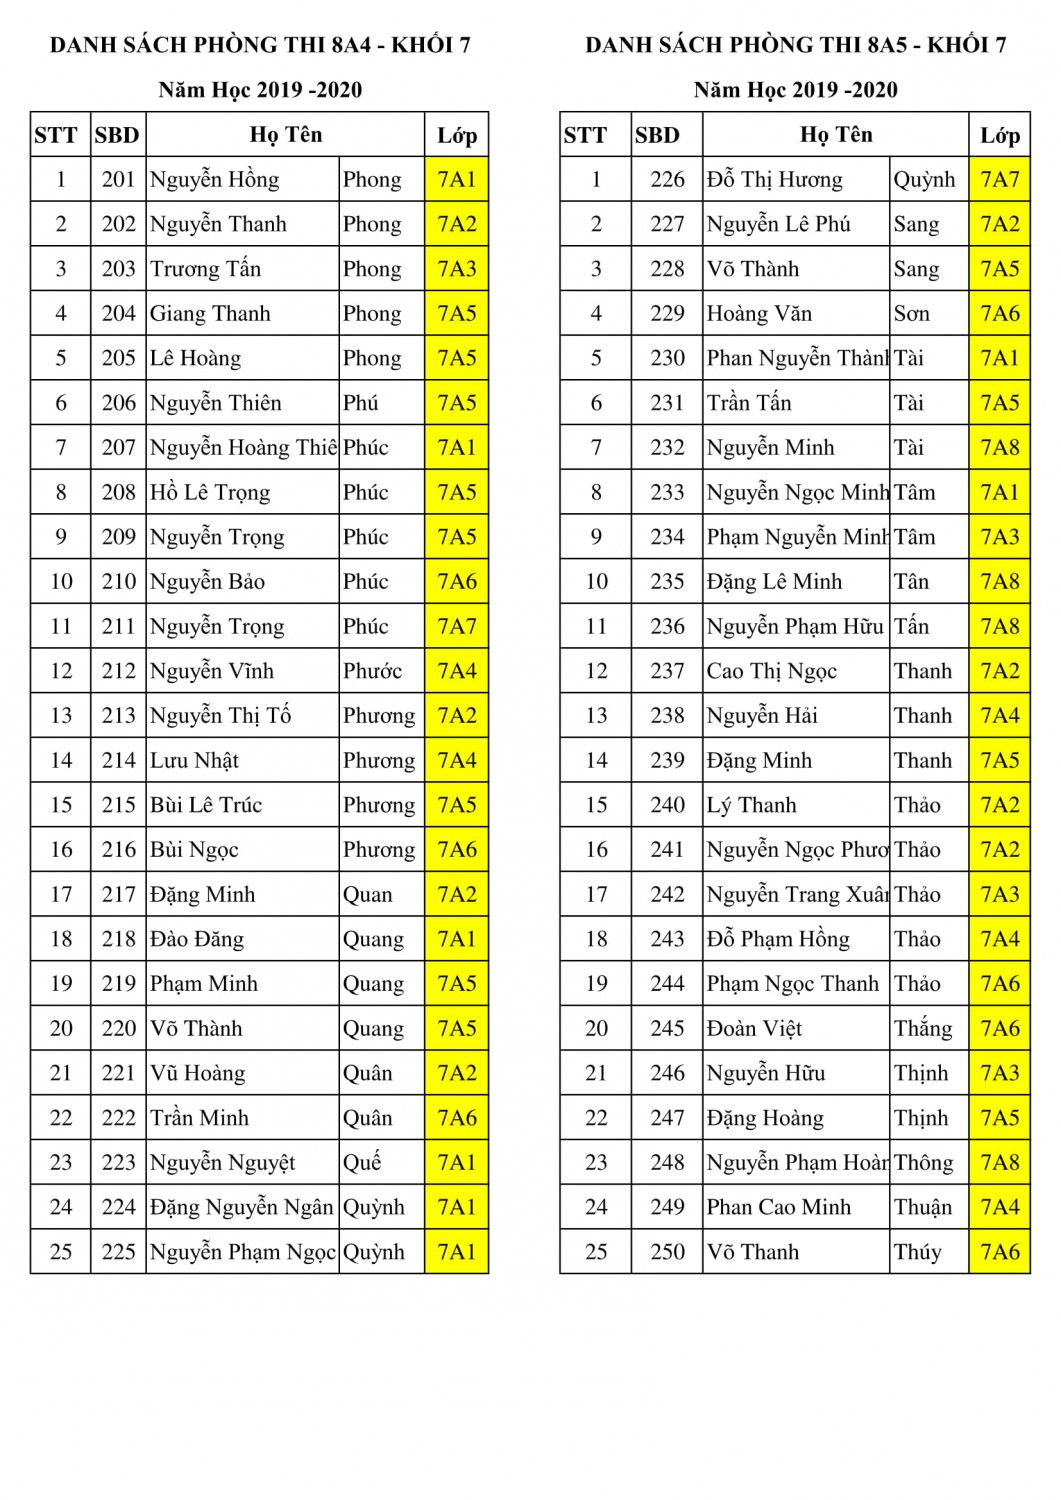 khoi 7 danh sách phong thi hk 2 2019 2020 5